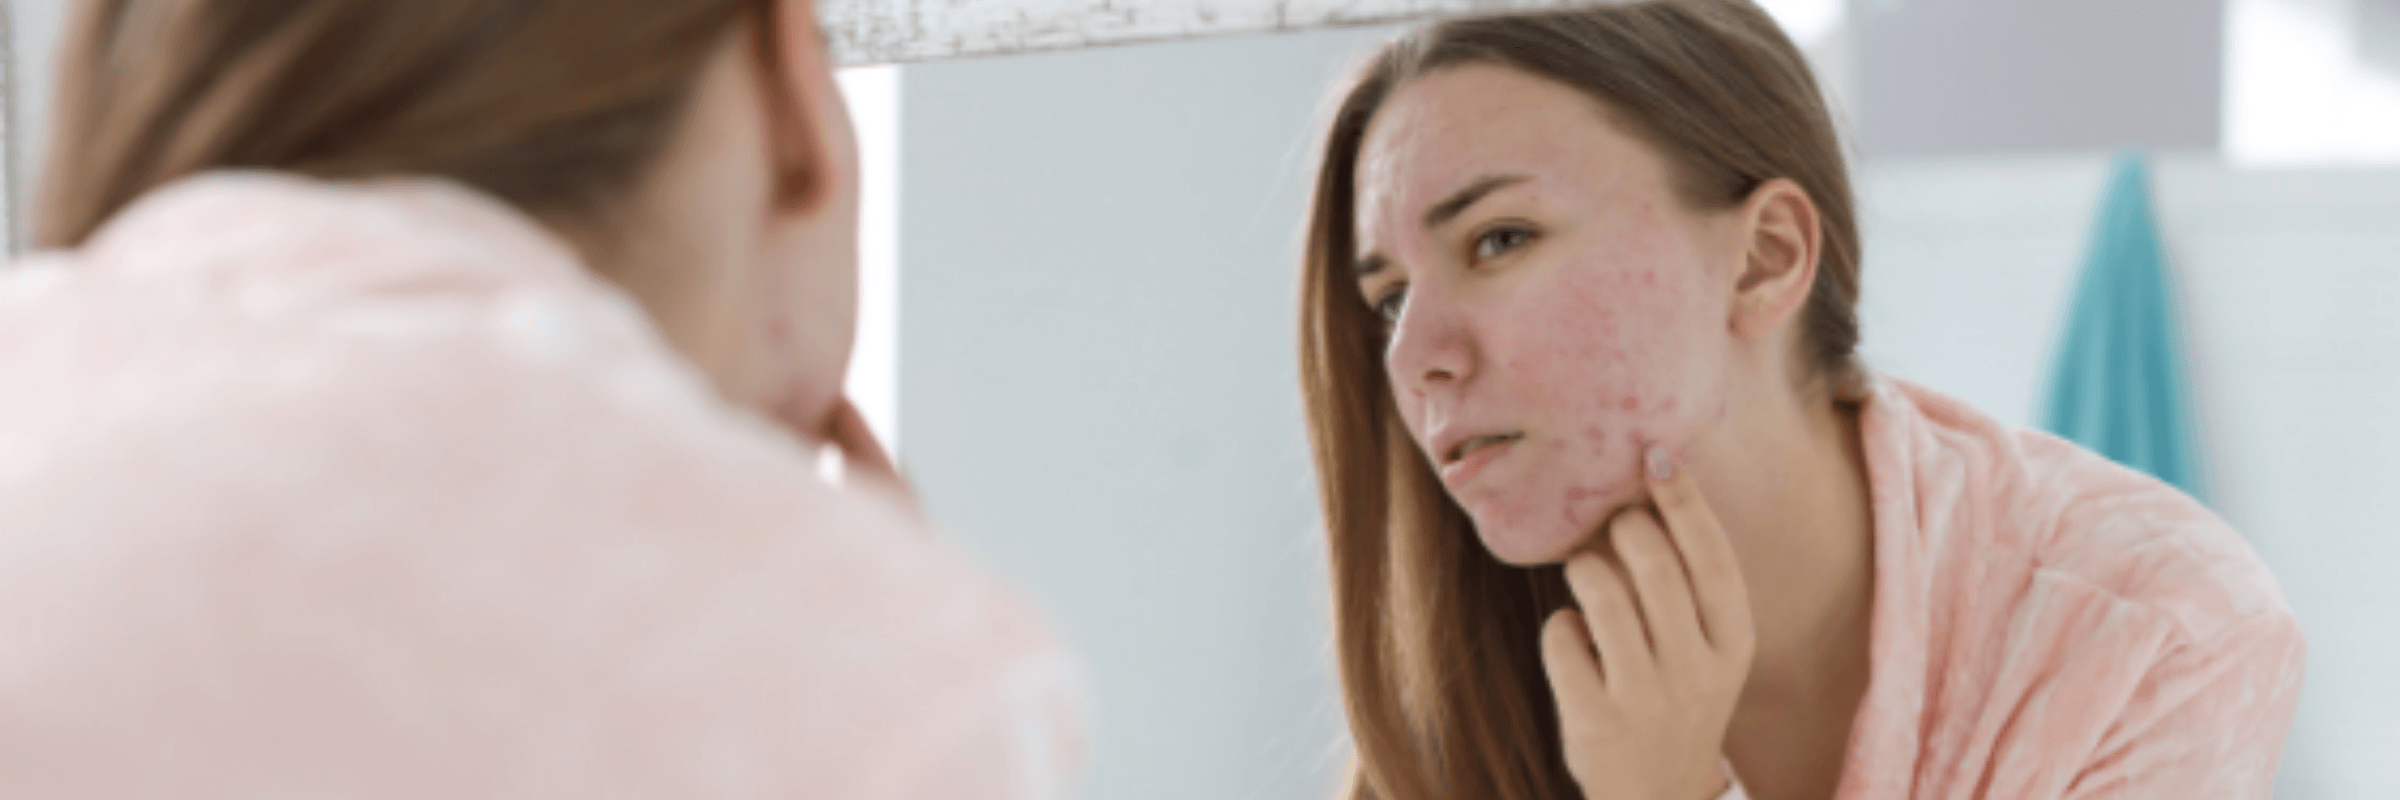 Combattre l'acné en 5 étapes faciles